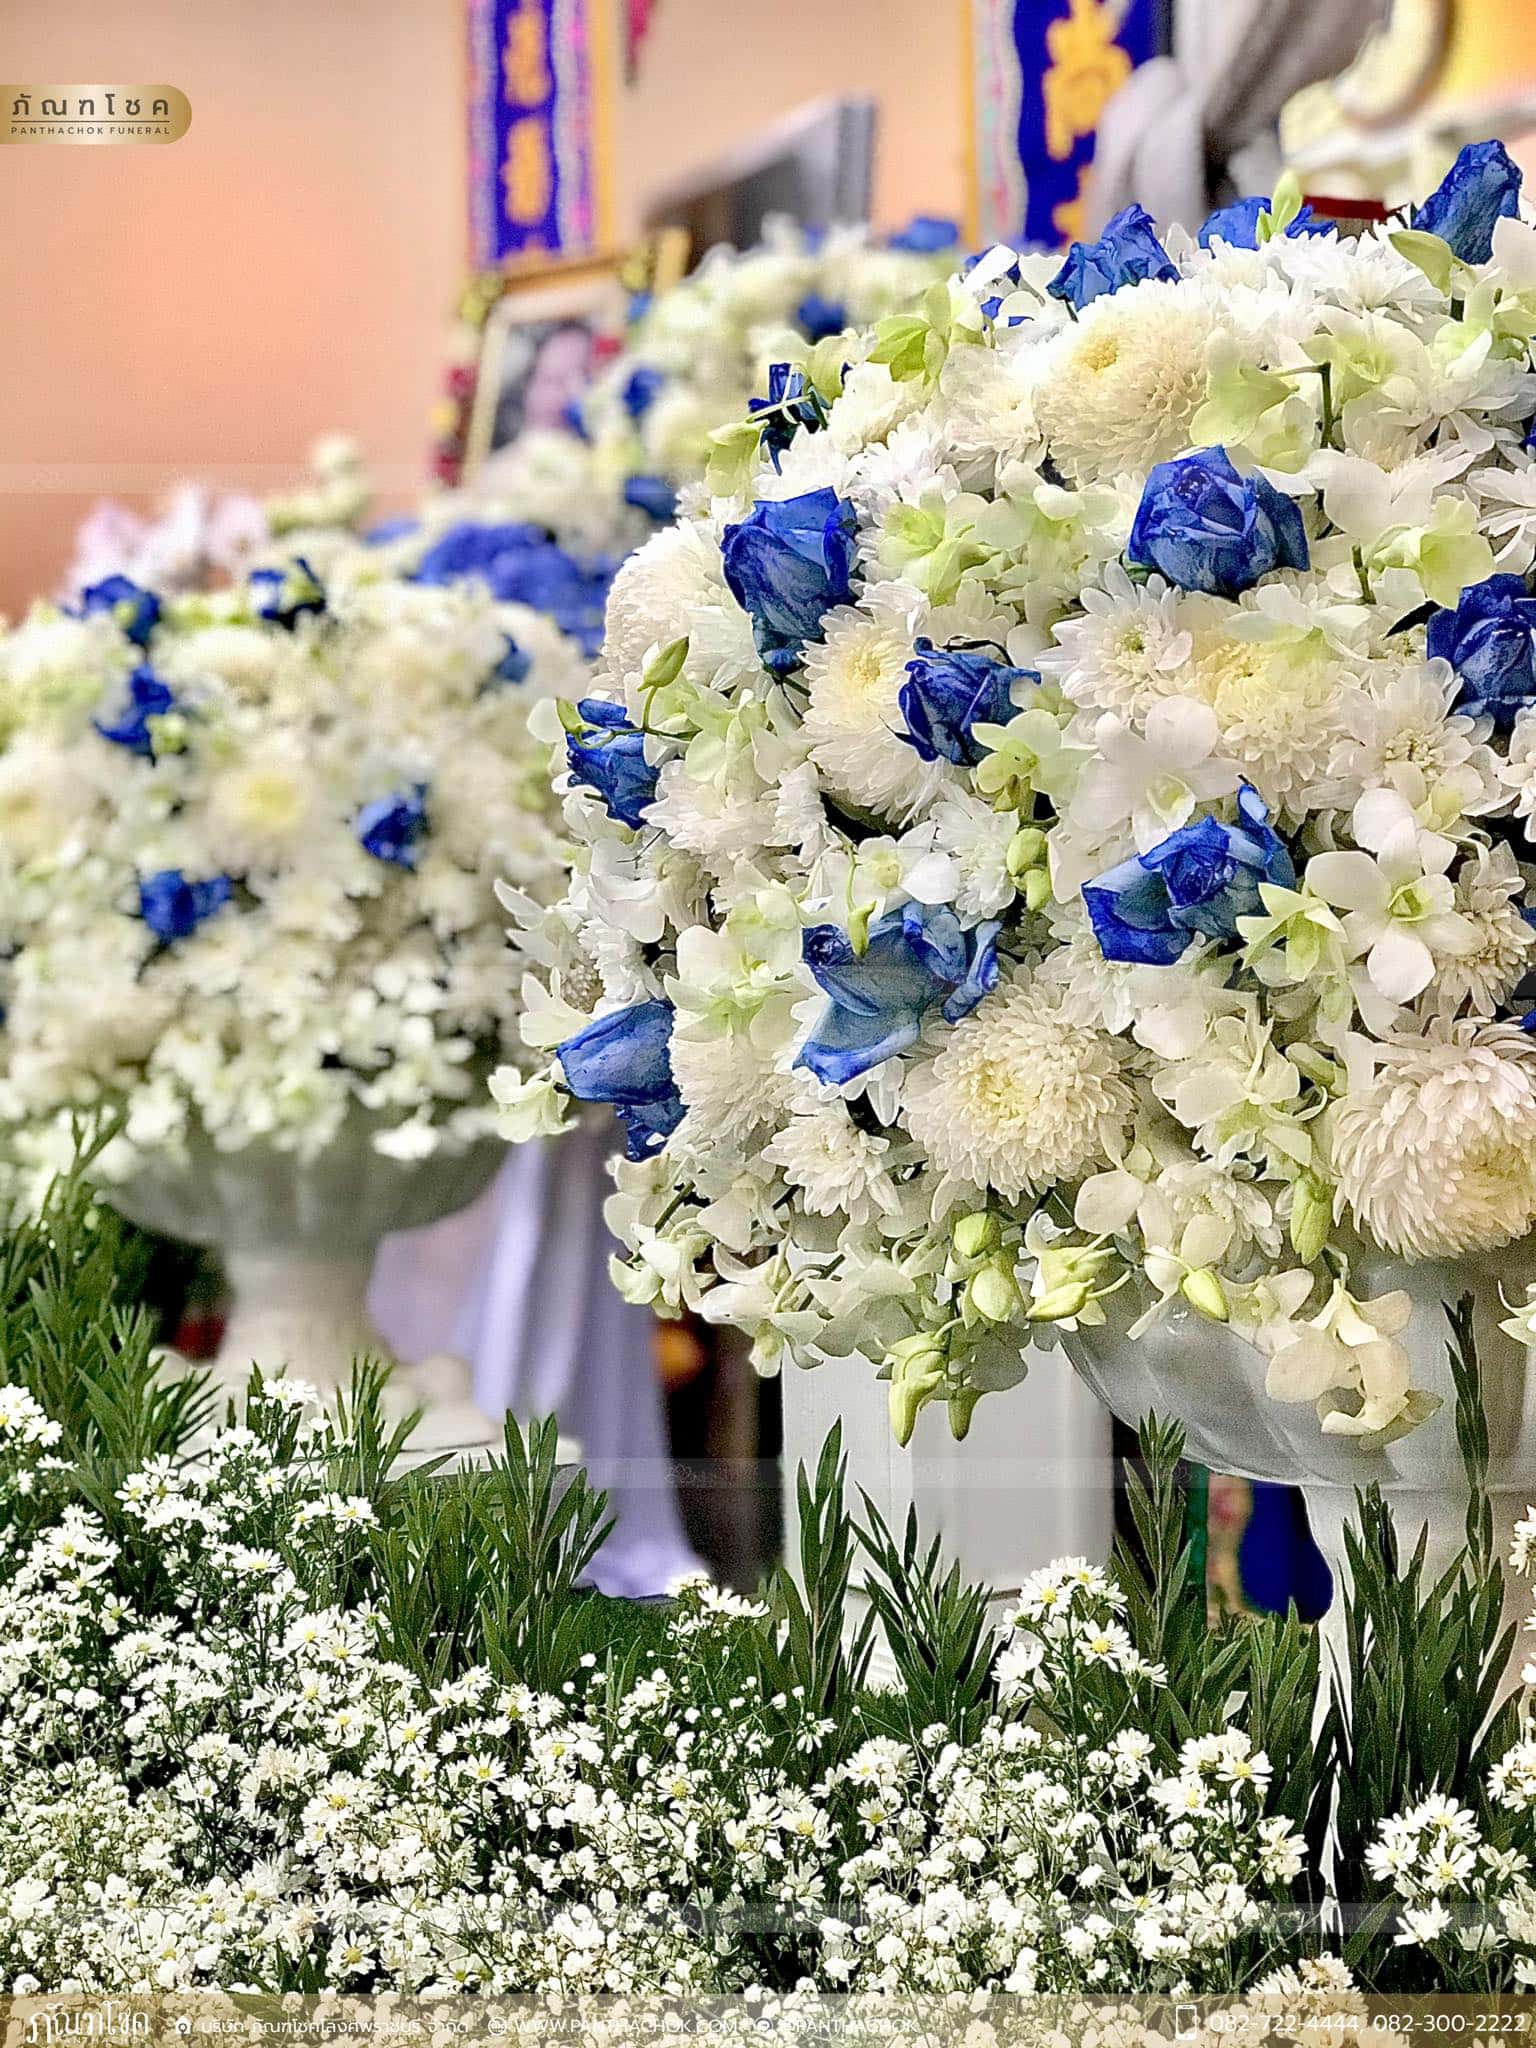 ชุดดอกไม้งานศพ วัดเทพศิรินทราวาส ราชวรวิหาร 9